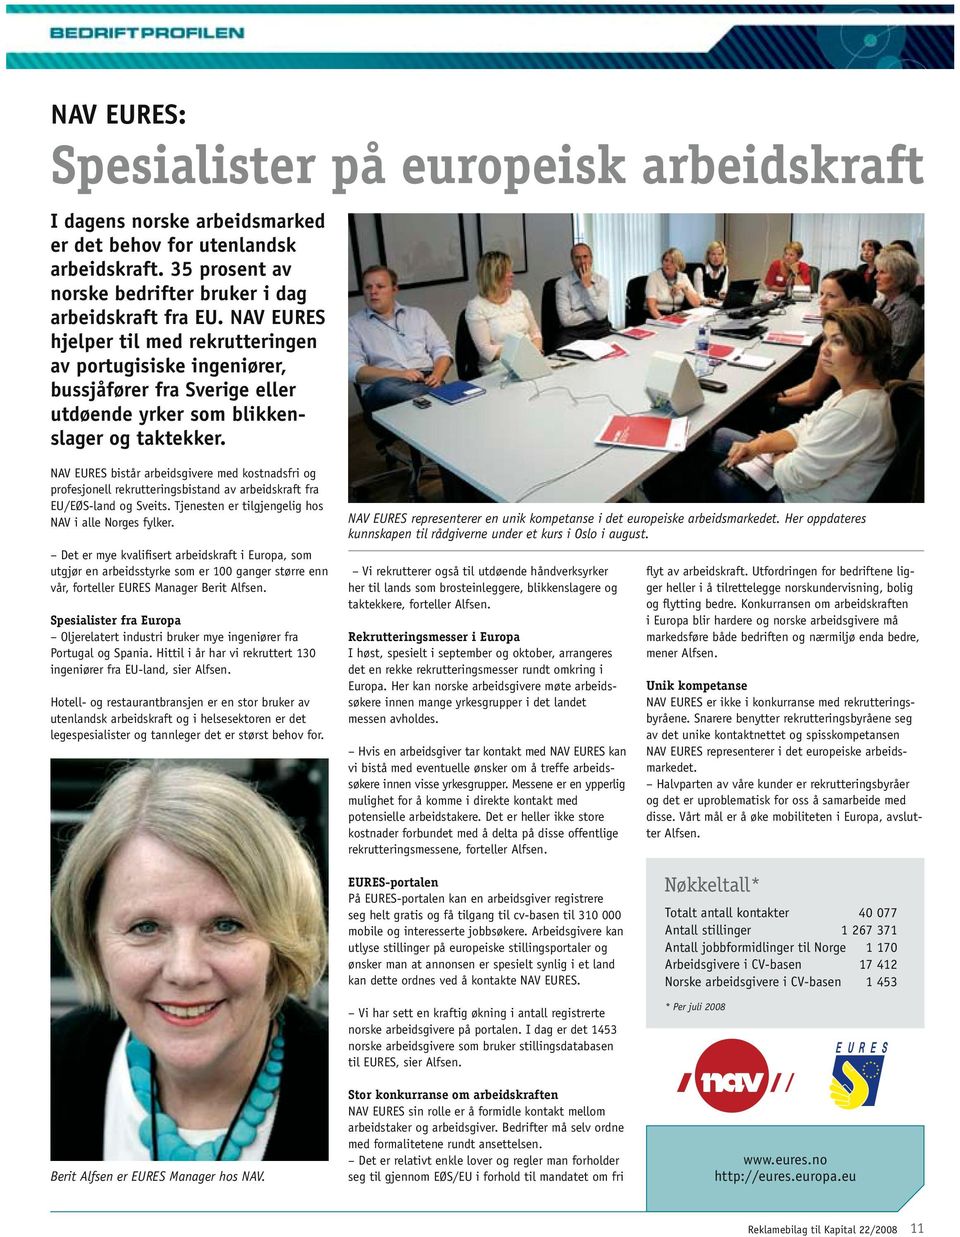 NAV EURES bistår arbeidsgivere med kostnadsfri og profesjonell rekrutteringsbistand av arbeidskraft fra EU/EØS-land og Sveits. Tjenesten er tilgjengelig hos NAV i alle Norges fylker.